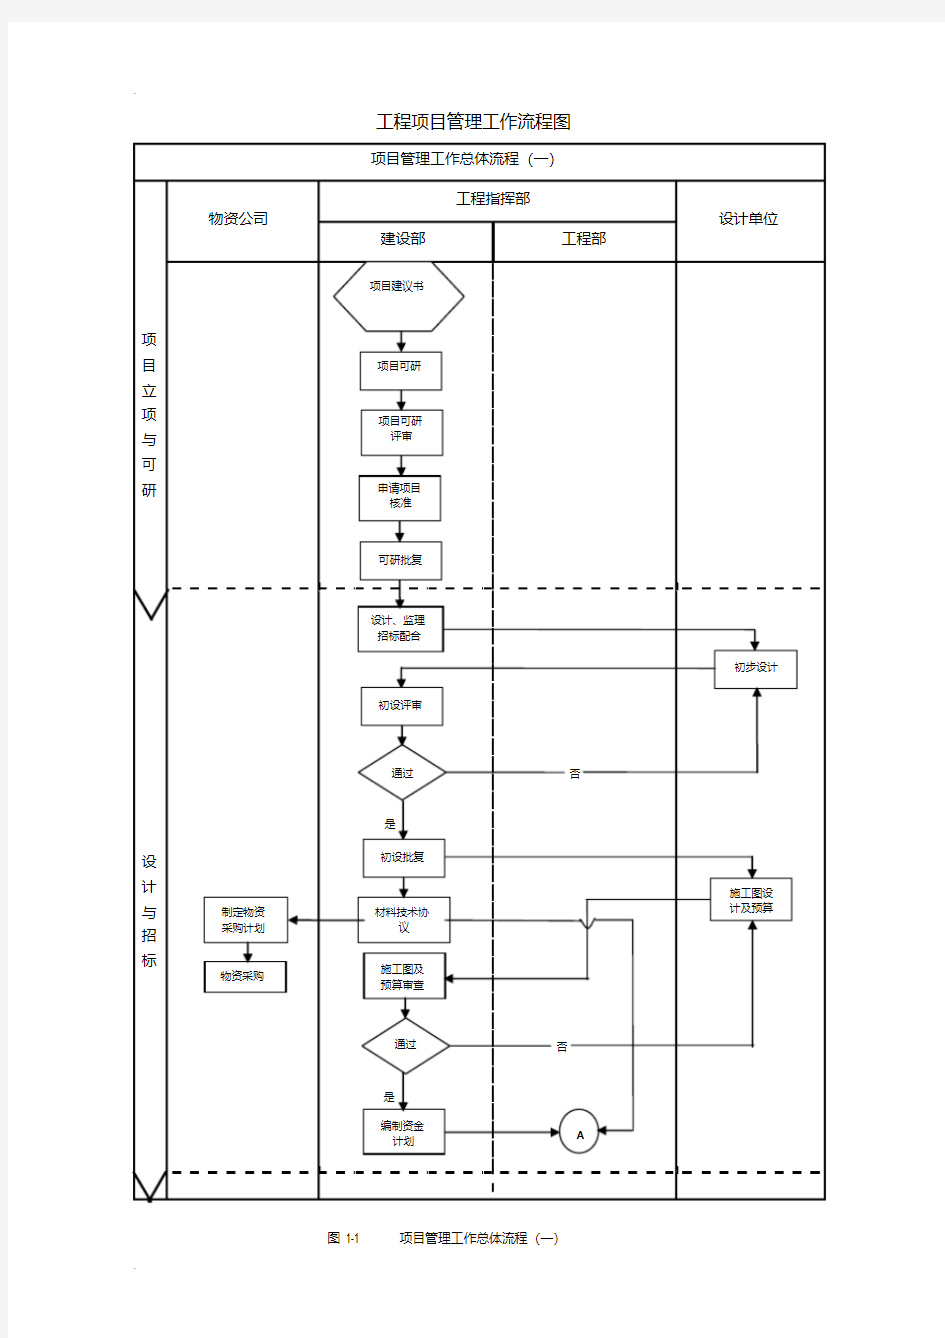 建设单位(业主方)工程项目管理系统流程图